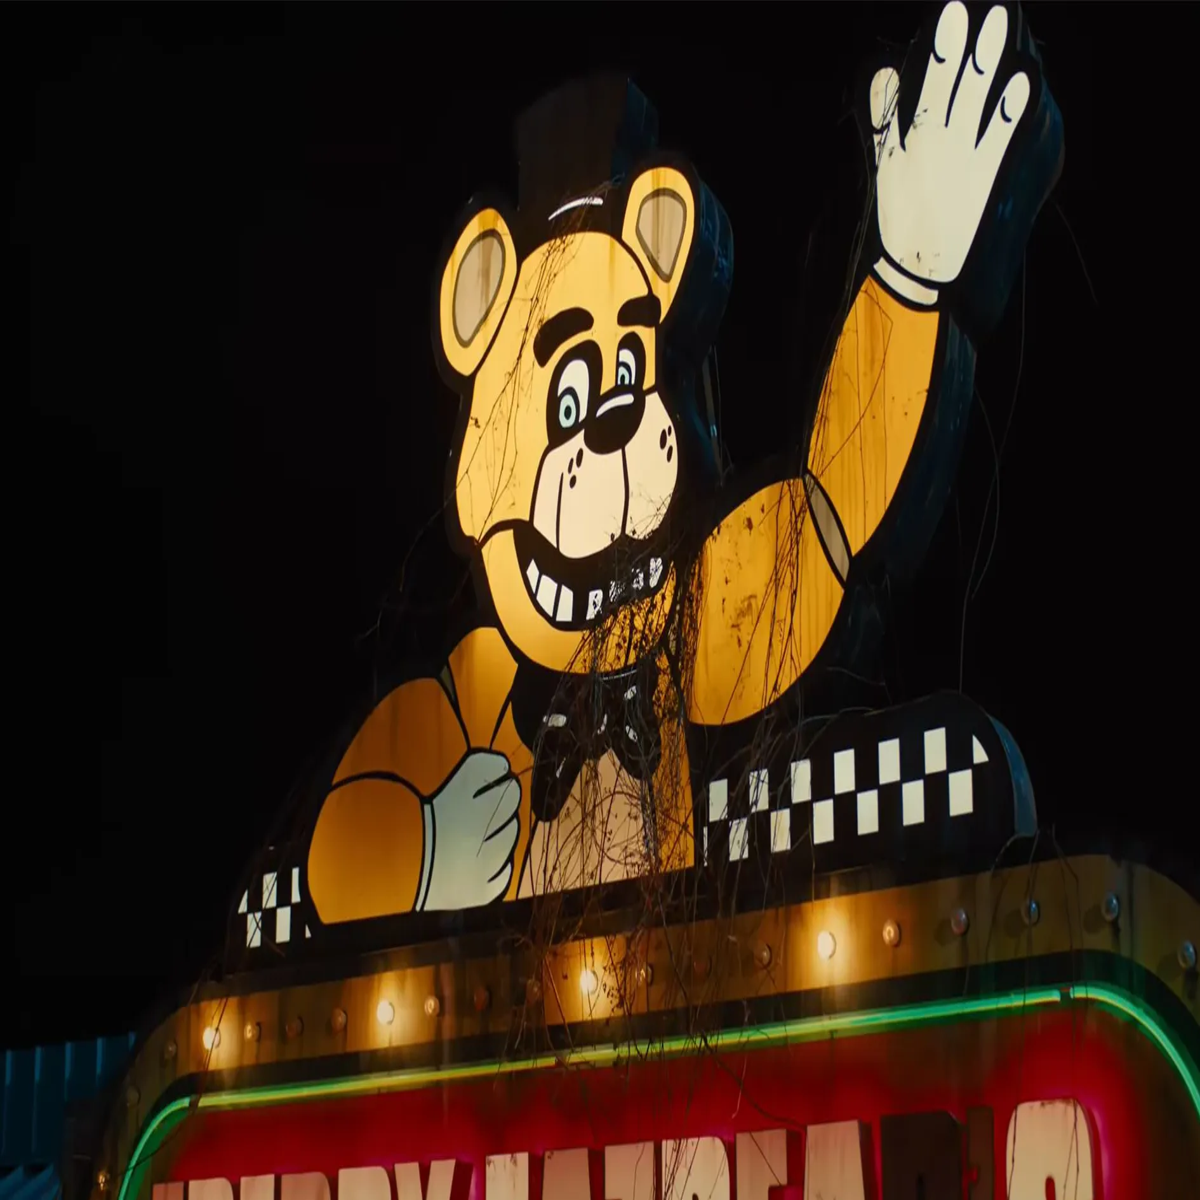 Five Nights at Freddy's entrega boa adaptação dos jogos, mas com